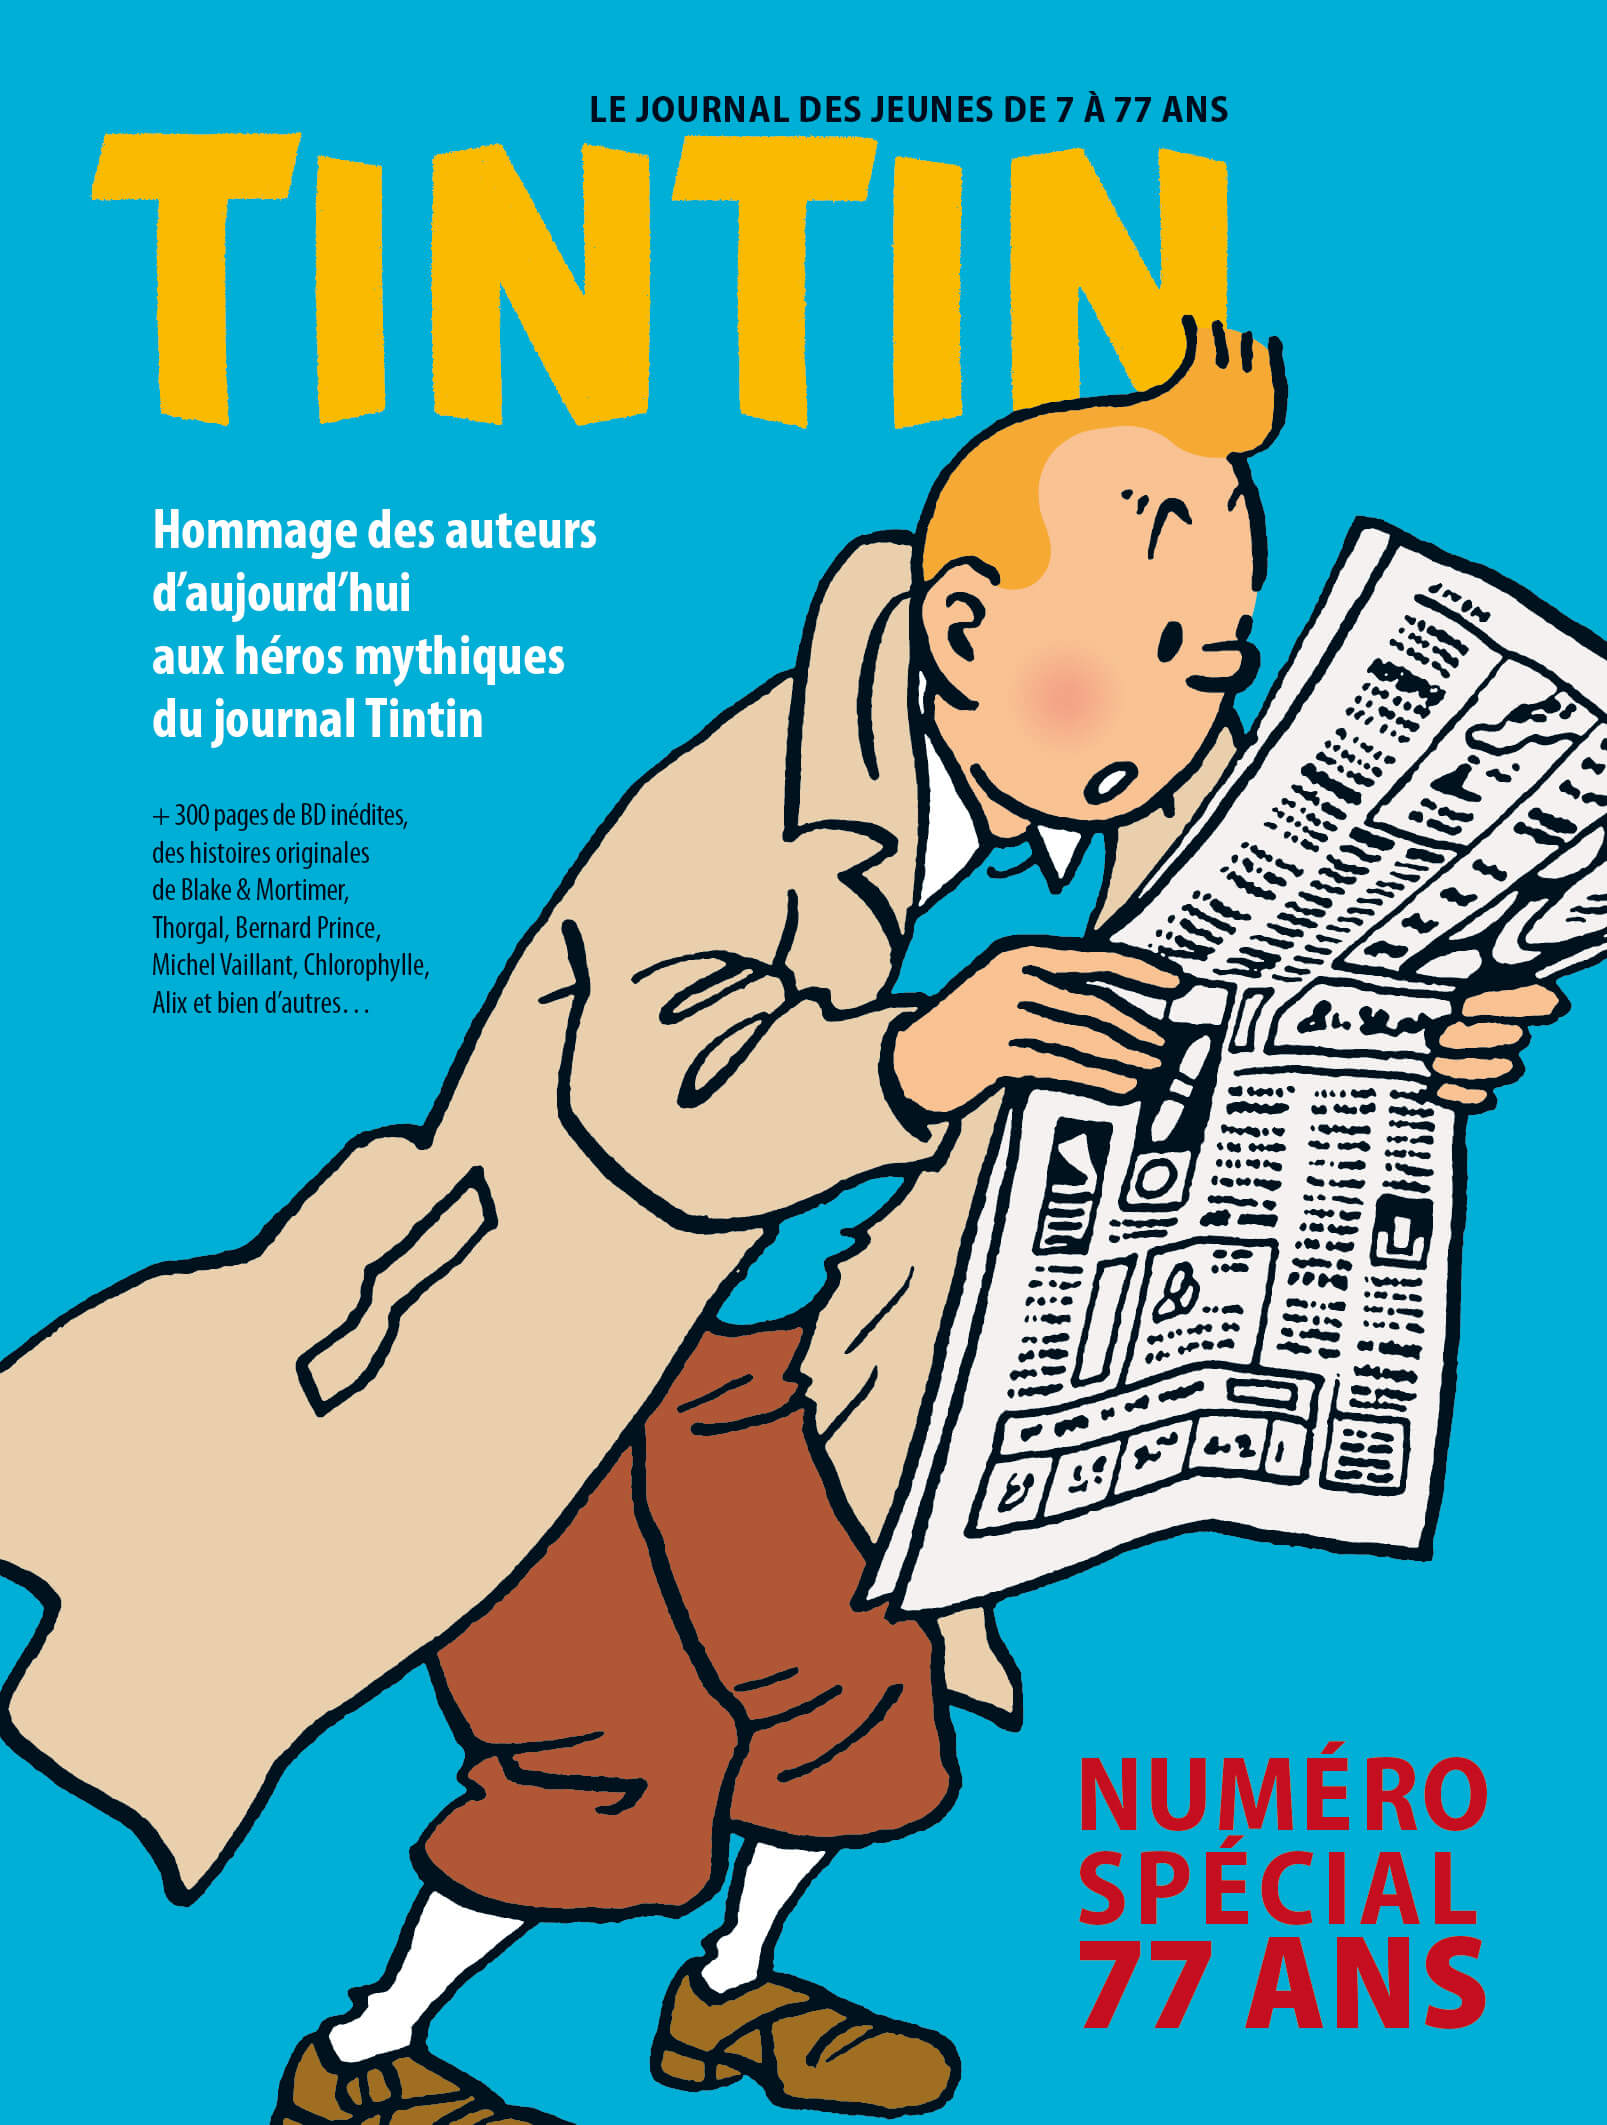 Le journal Tintin bientôt de retour (à réserver ) !